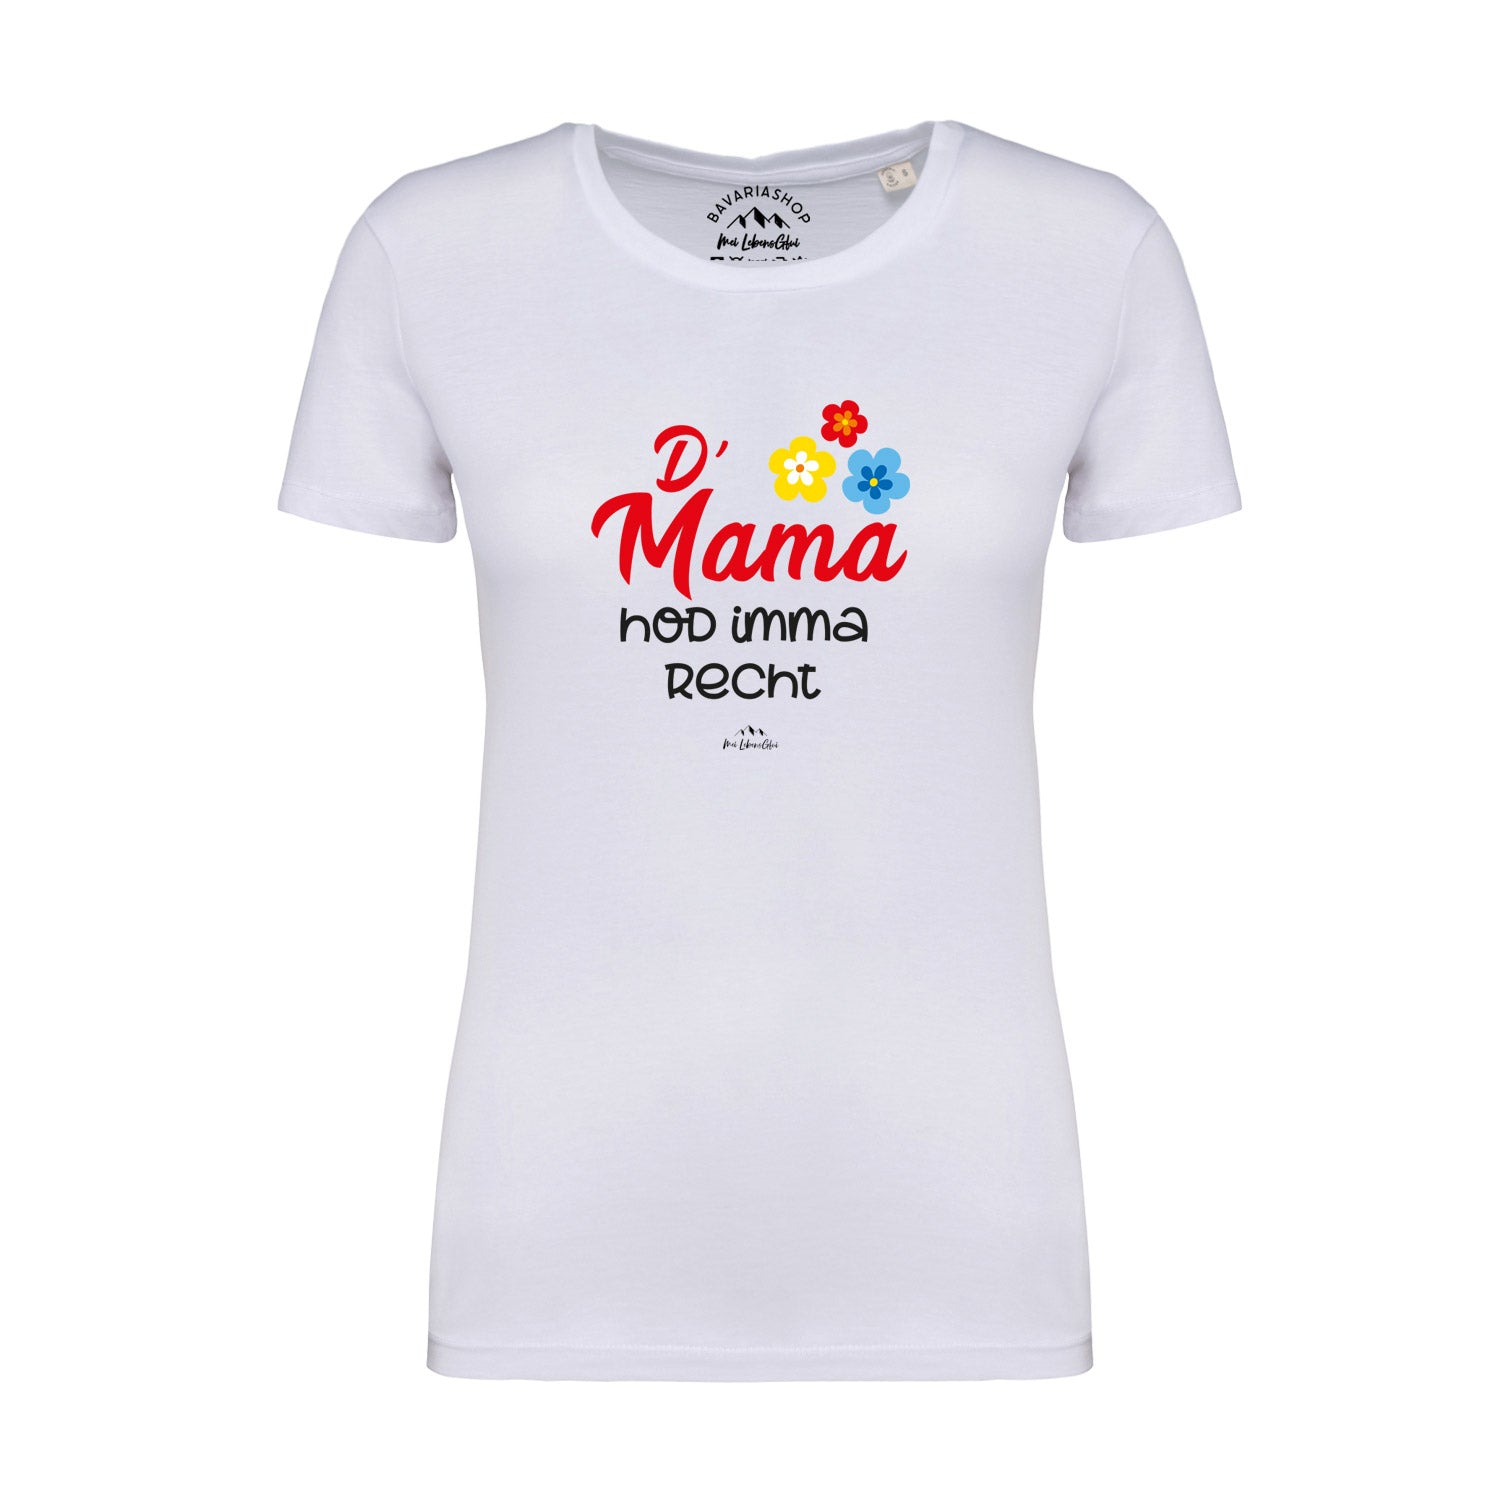 Damen T-Shirt "D' Mama hod imma recht"